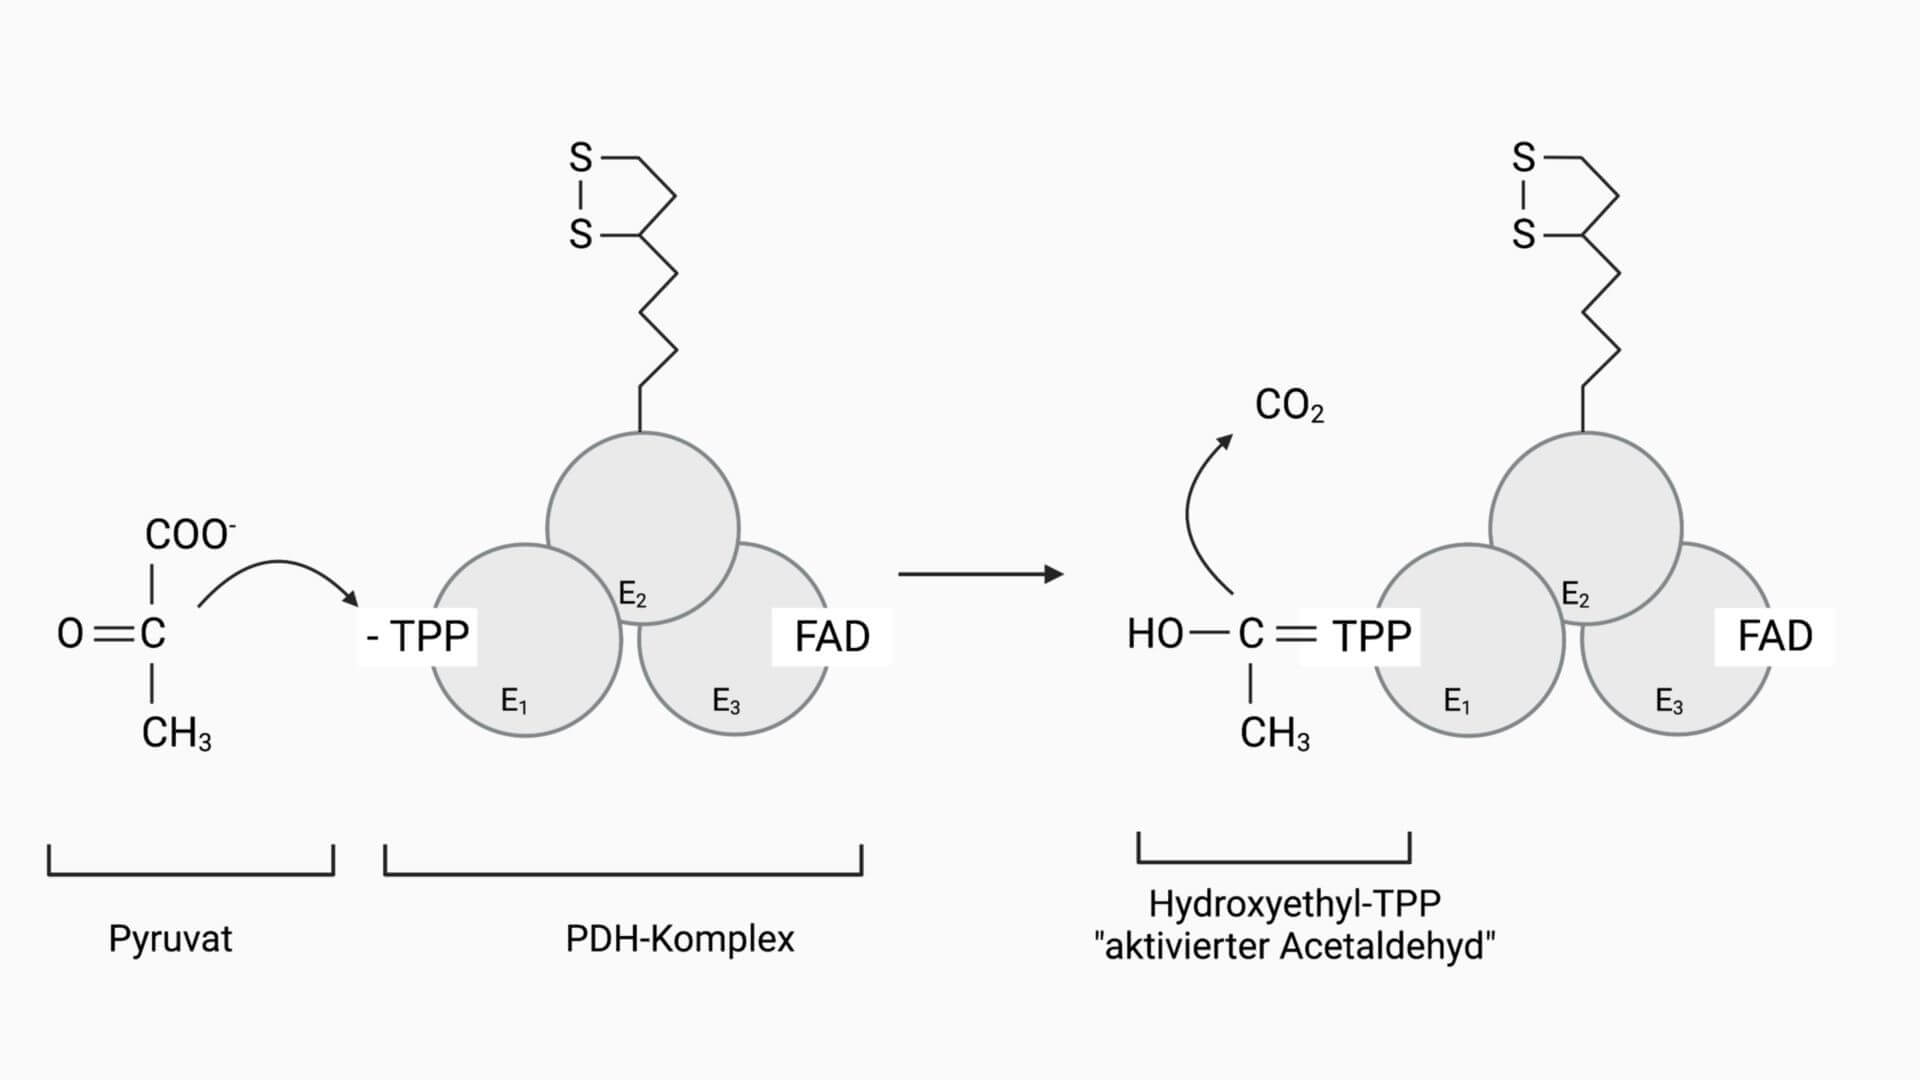 1. Reaktionsschritt der Pyruvatdehydrogenase